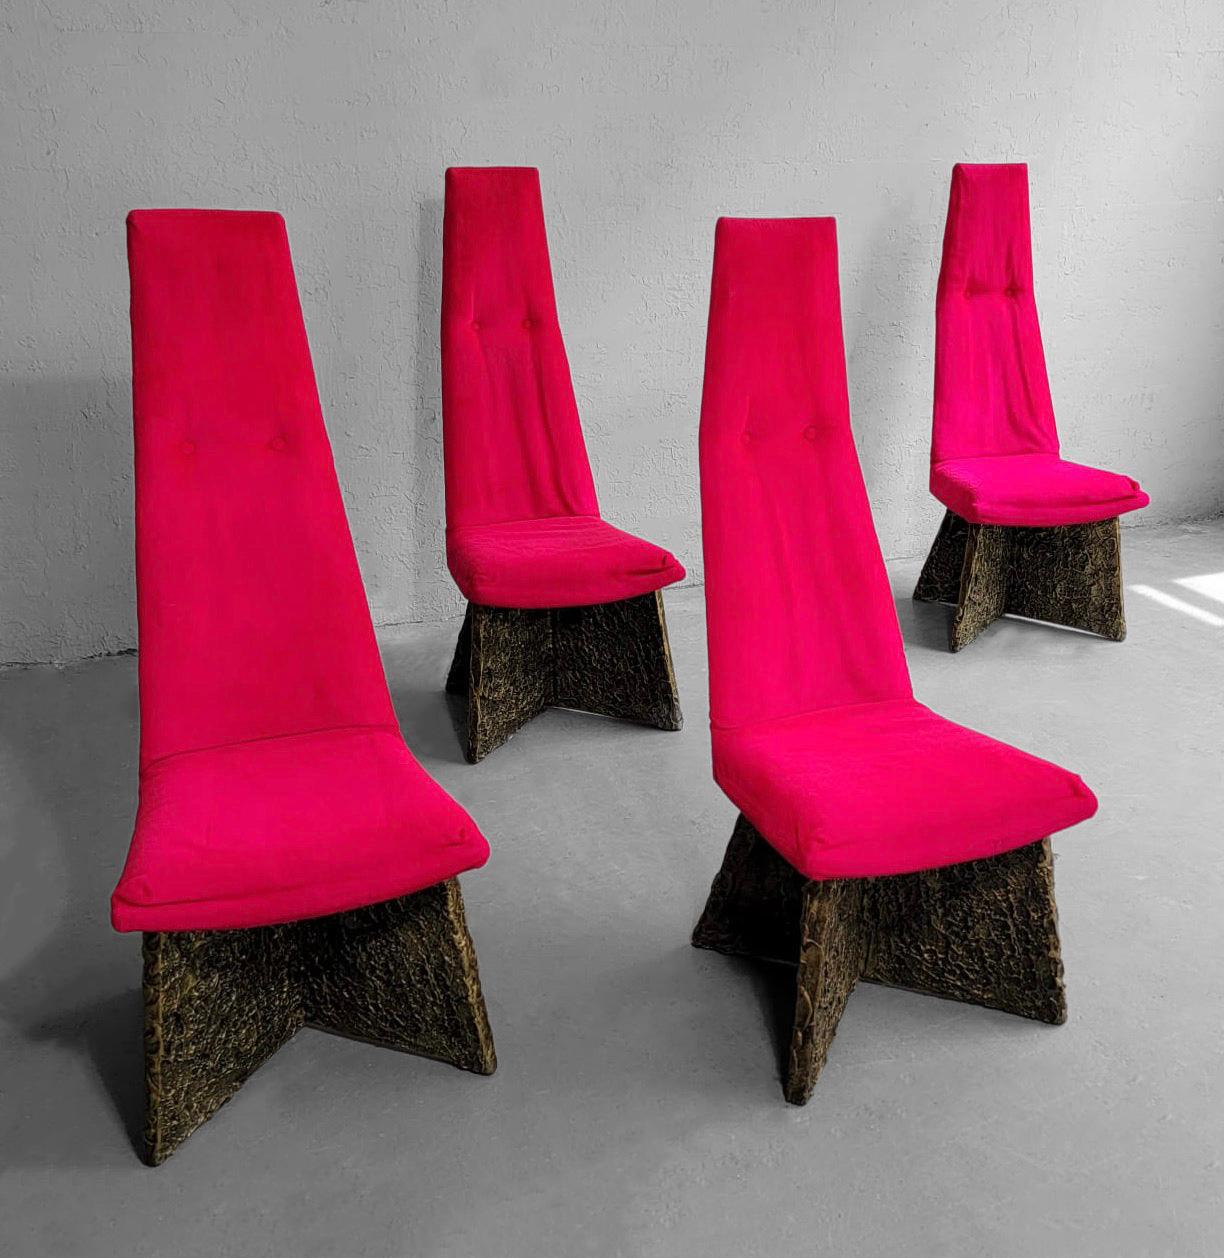 Ensemble de 4 impressionnantes chaises de salle à manger ou d'appoint brutalistes du milieu du siècle dernier, créées par Adrian Pearsall. Elles sont dotées d'un velours rouge à lèvres, de sièges à haut dossier profilés et d'épaisses bases en résine